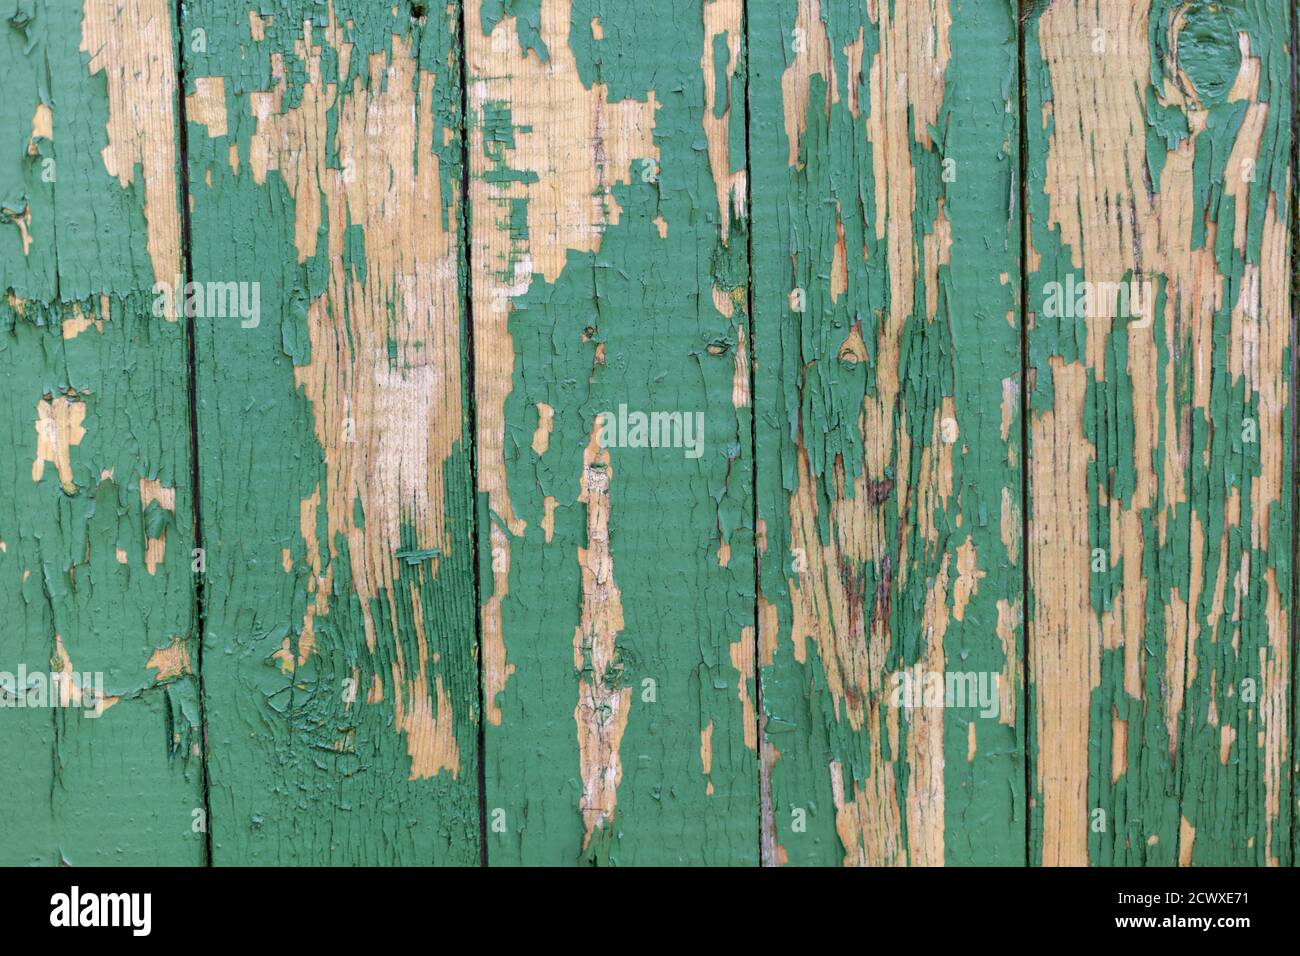 Dunkelgrün zerkratzte Grunge Holz strukturierte Wand. Alte Holzstruktur mit abblätternder Farbe. Stockfoto